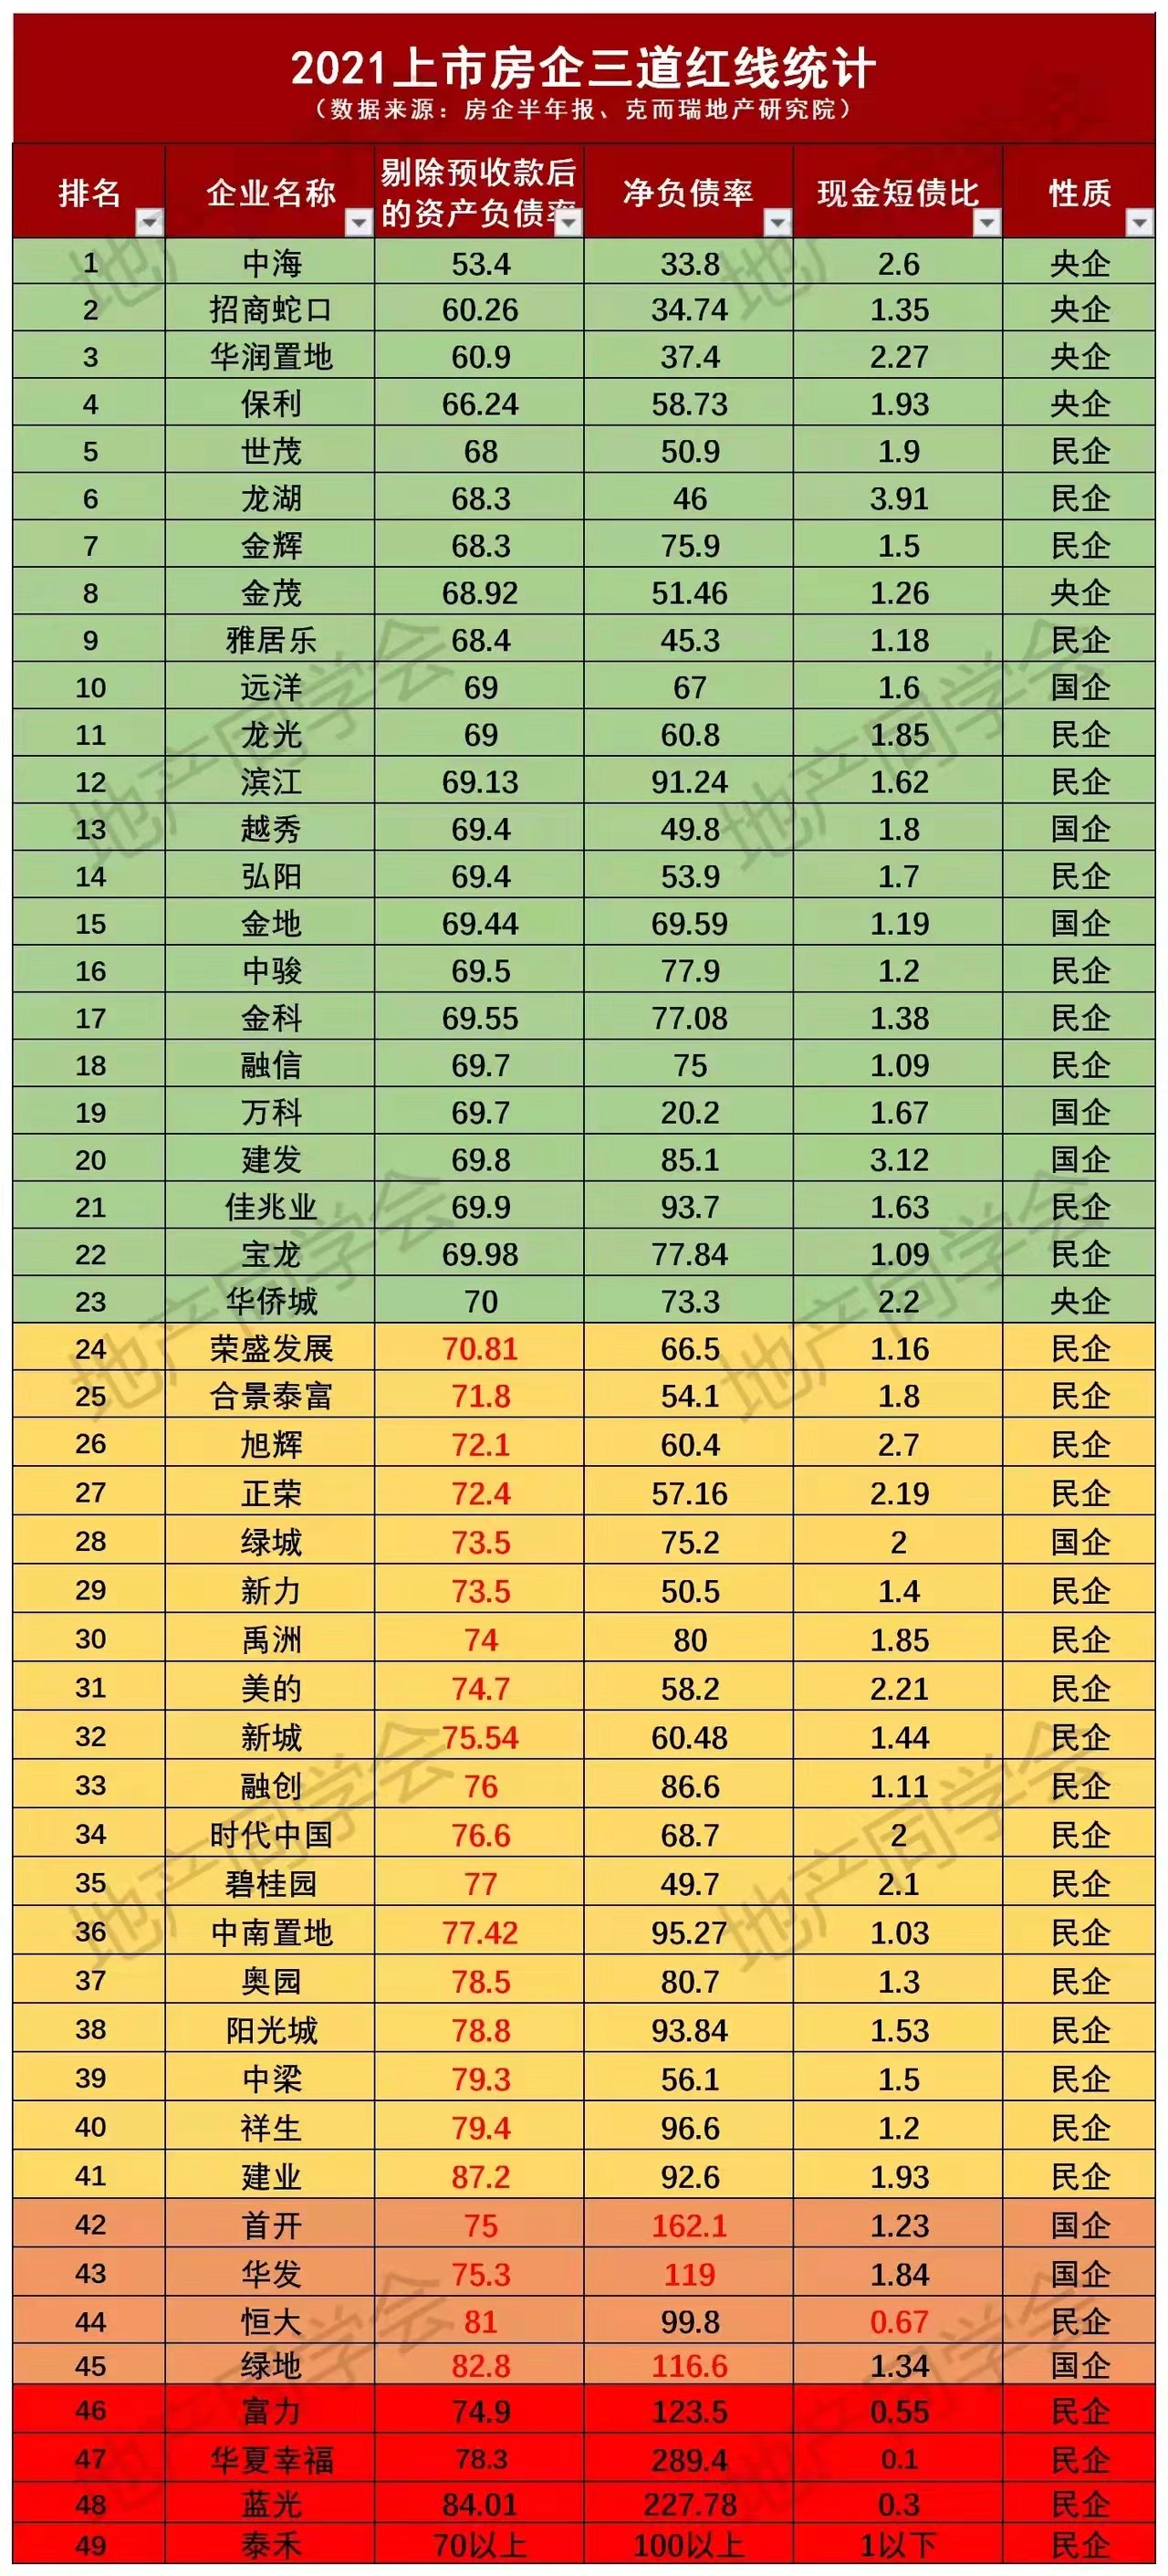 涿州房价网教您看懂三道红线指标榜买新房少踩坑